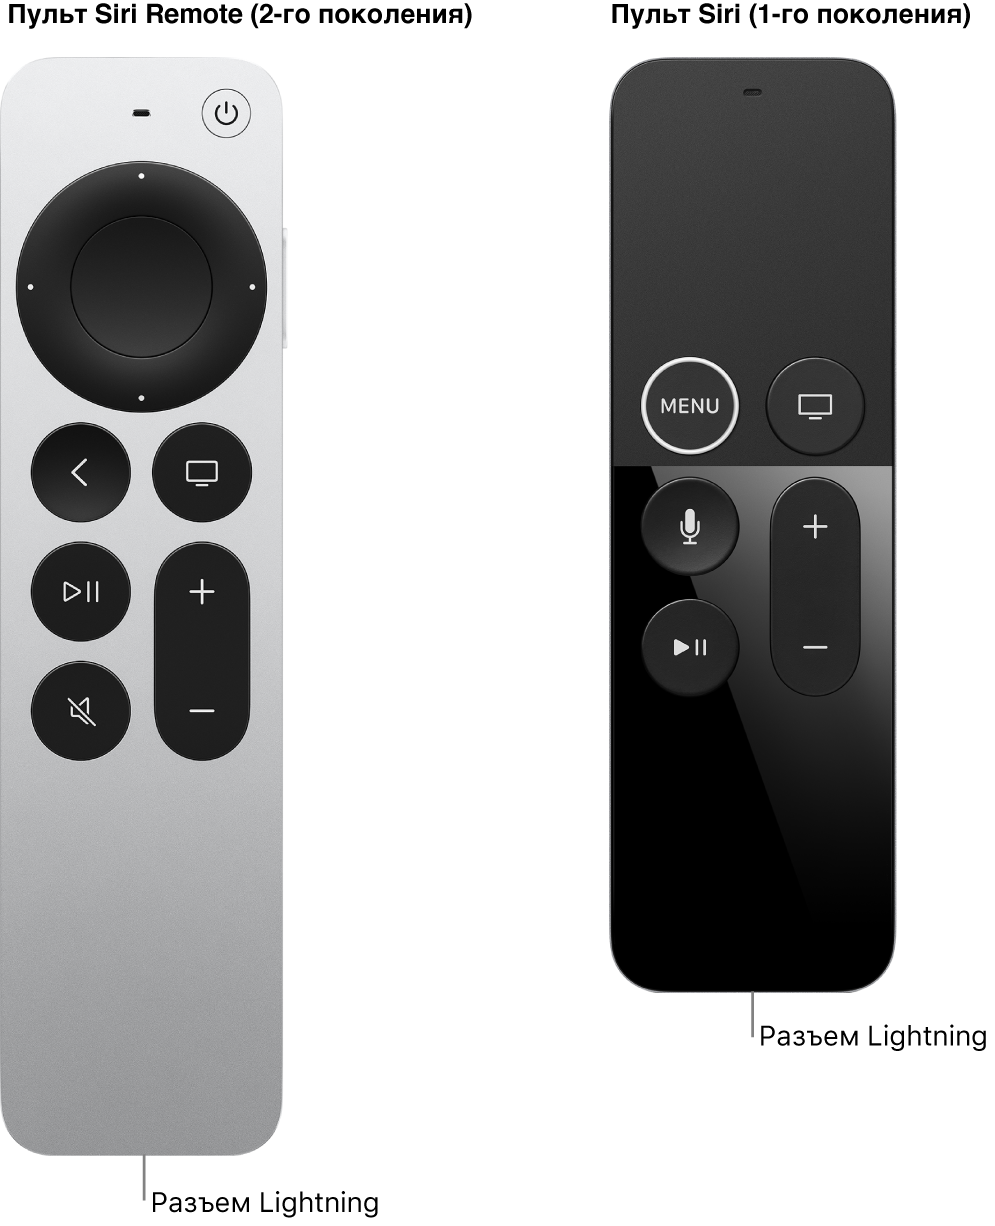 На рисунке показан разъем Lightning пульта Siri Remote (2-го поколения) и Siri Remote (1-го поколения)